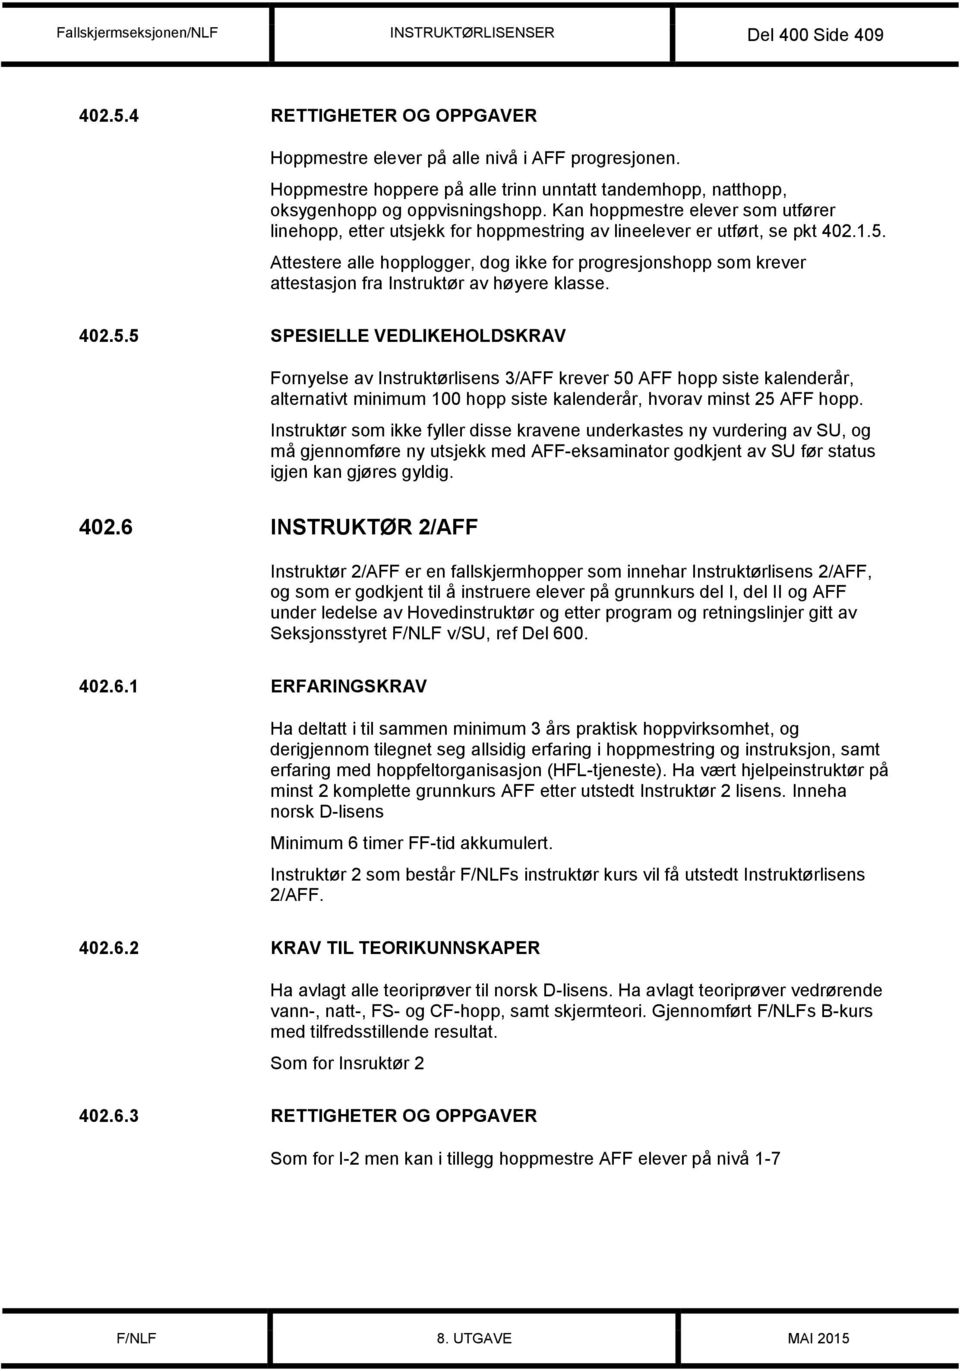 Kan hoppmestre elever som utfører linehopp, etter utsjekk for hoppmestring av lineelever er utført, se pkt 402.1.5.